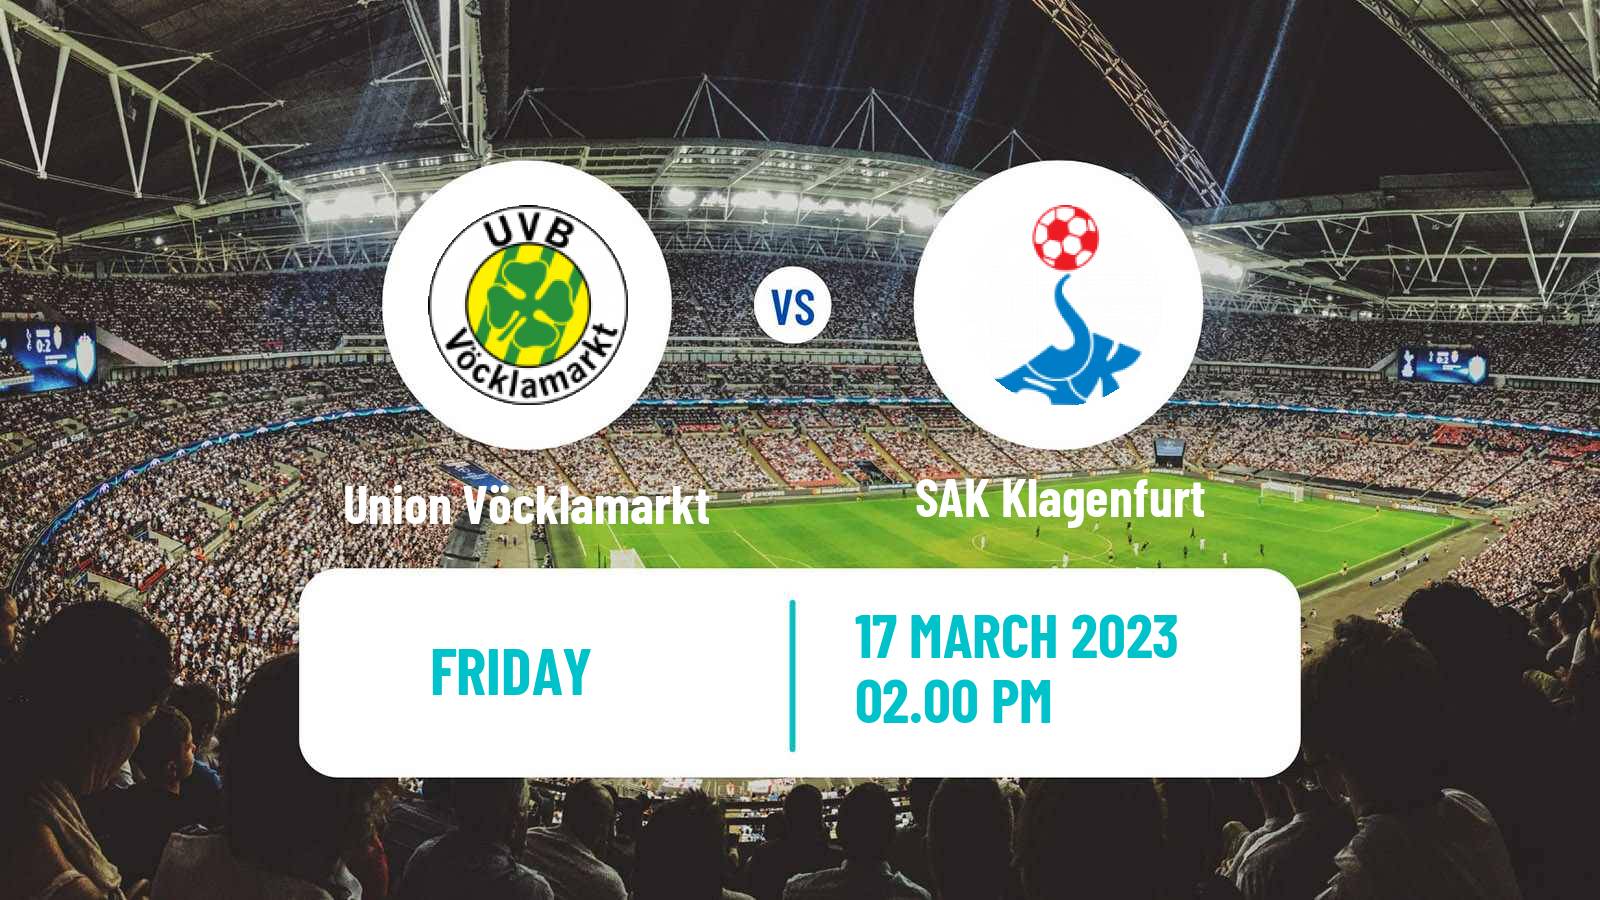 Soccer Austrian Regionalliga Central Union Vöcklamarkt - SAK Klagenfurt